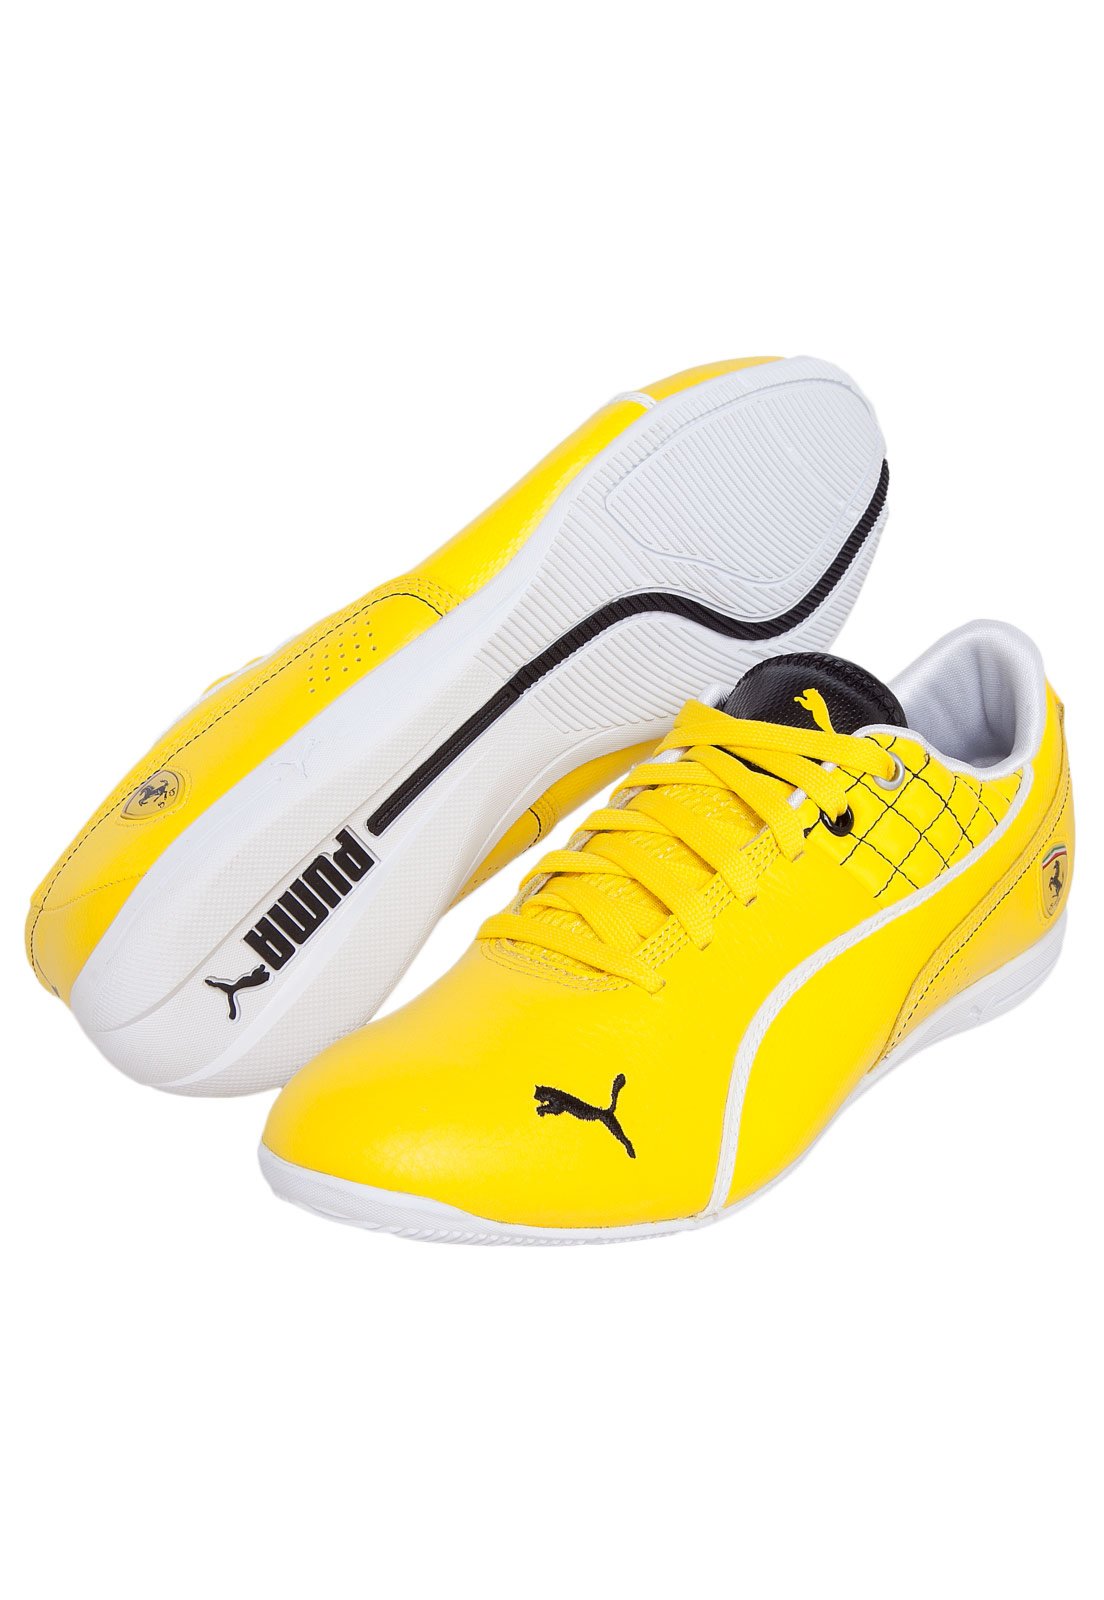 tenis puma feminino amarelo